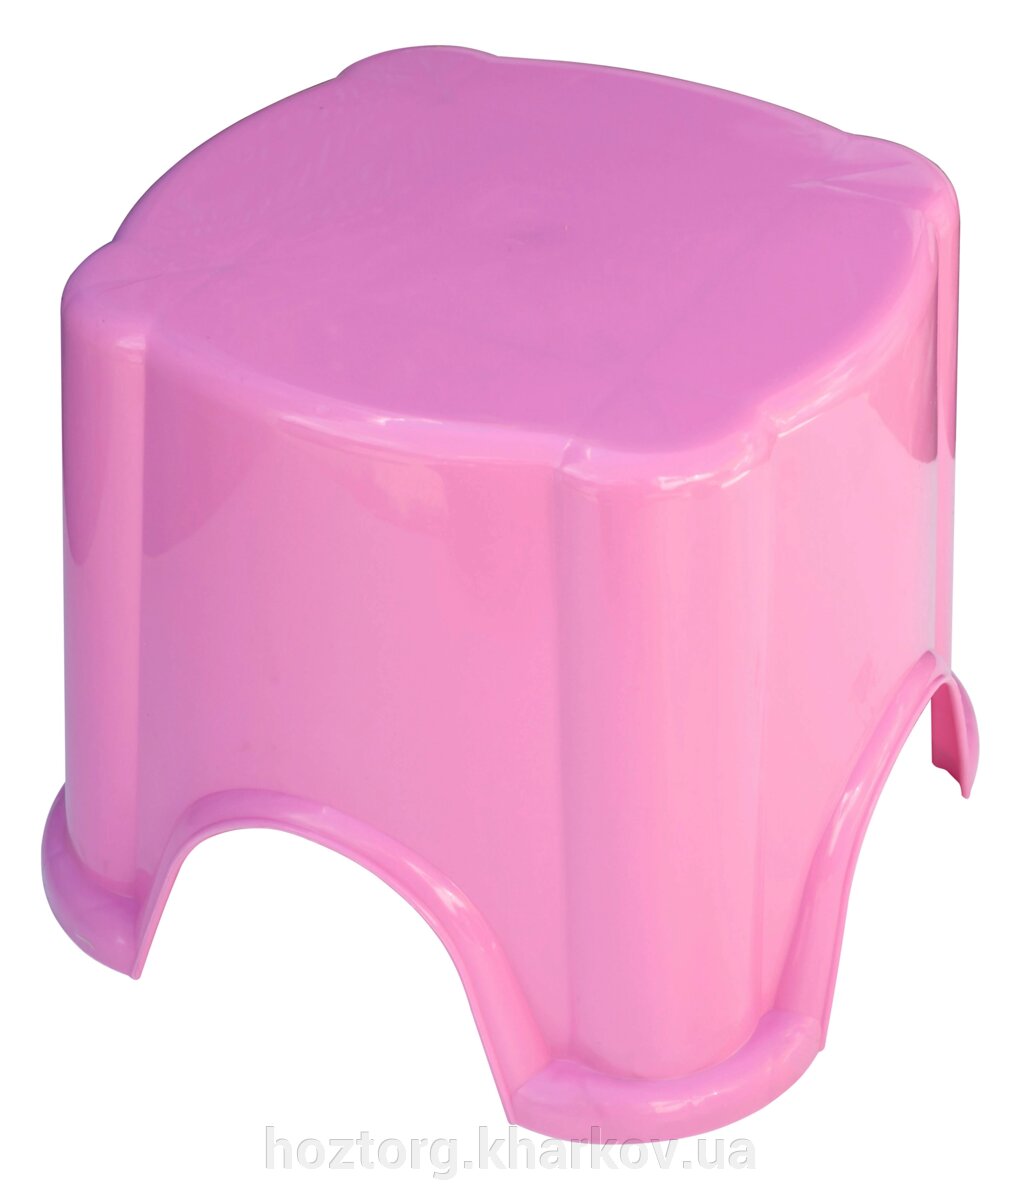 Табурет дитячий рожевий, висота 20.5 см (ПолімерАгро) від компанії Інтернет-магазин Хозторг Харків. Господарські товари оптом - фото 1